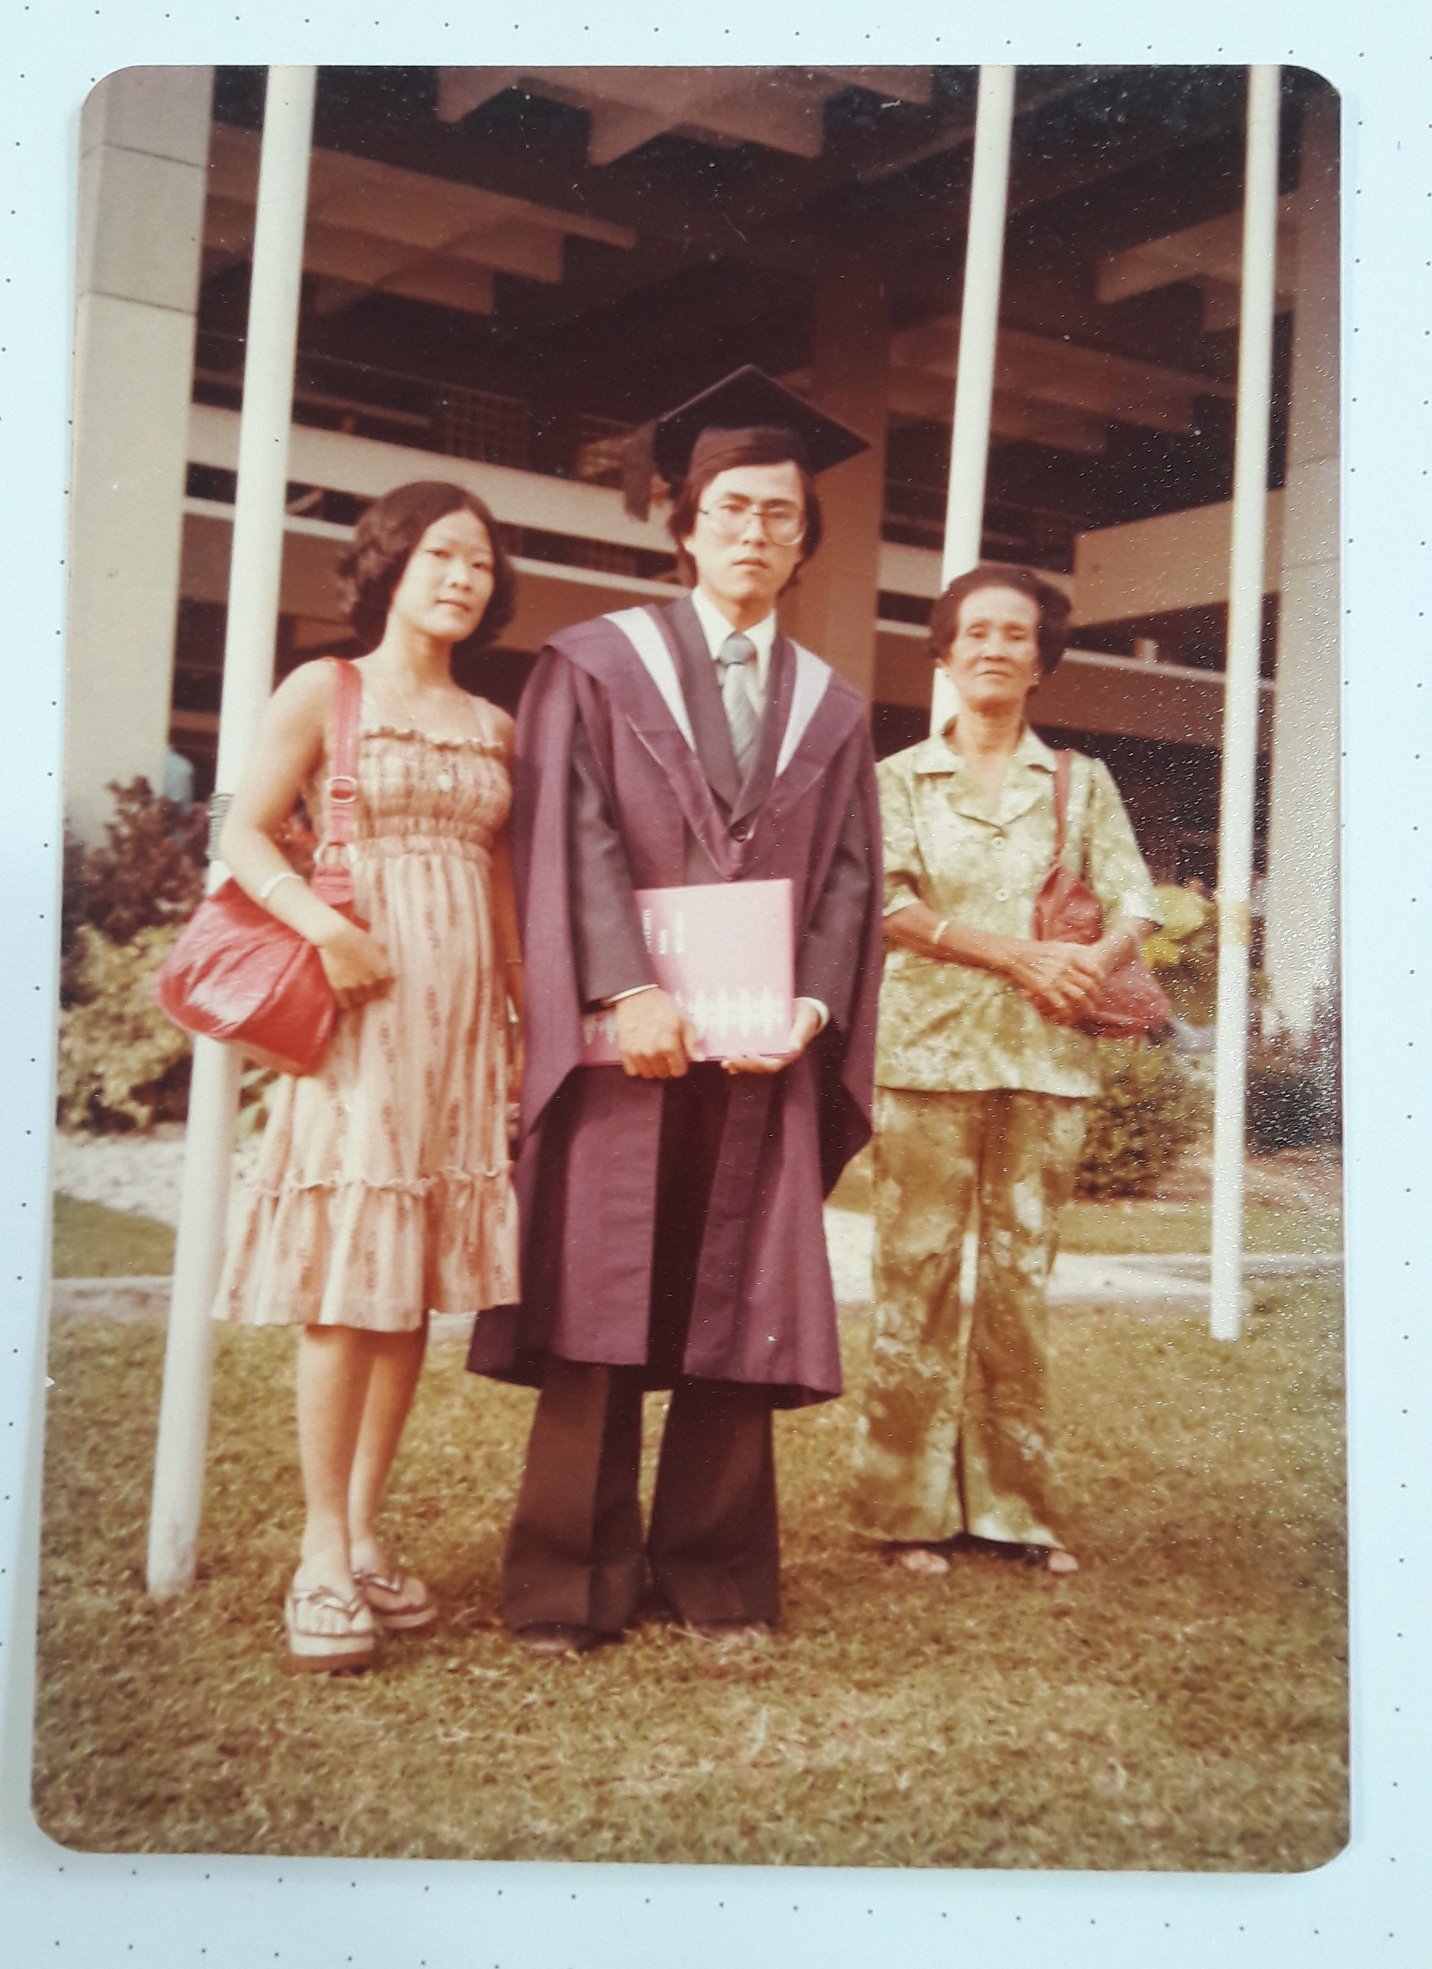 来自小地方的沈钧积是上世纪70年代有幸上大学的孩子，毕业于马来西亚理科大学。左右两旁分别是母亲和妹妹。